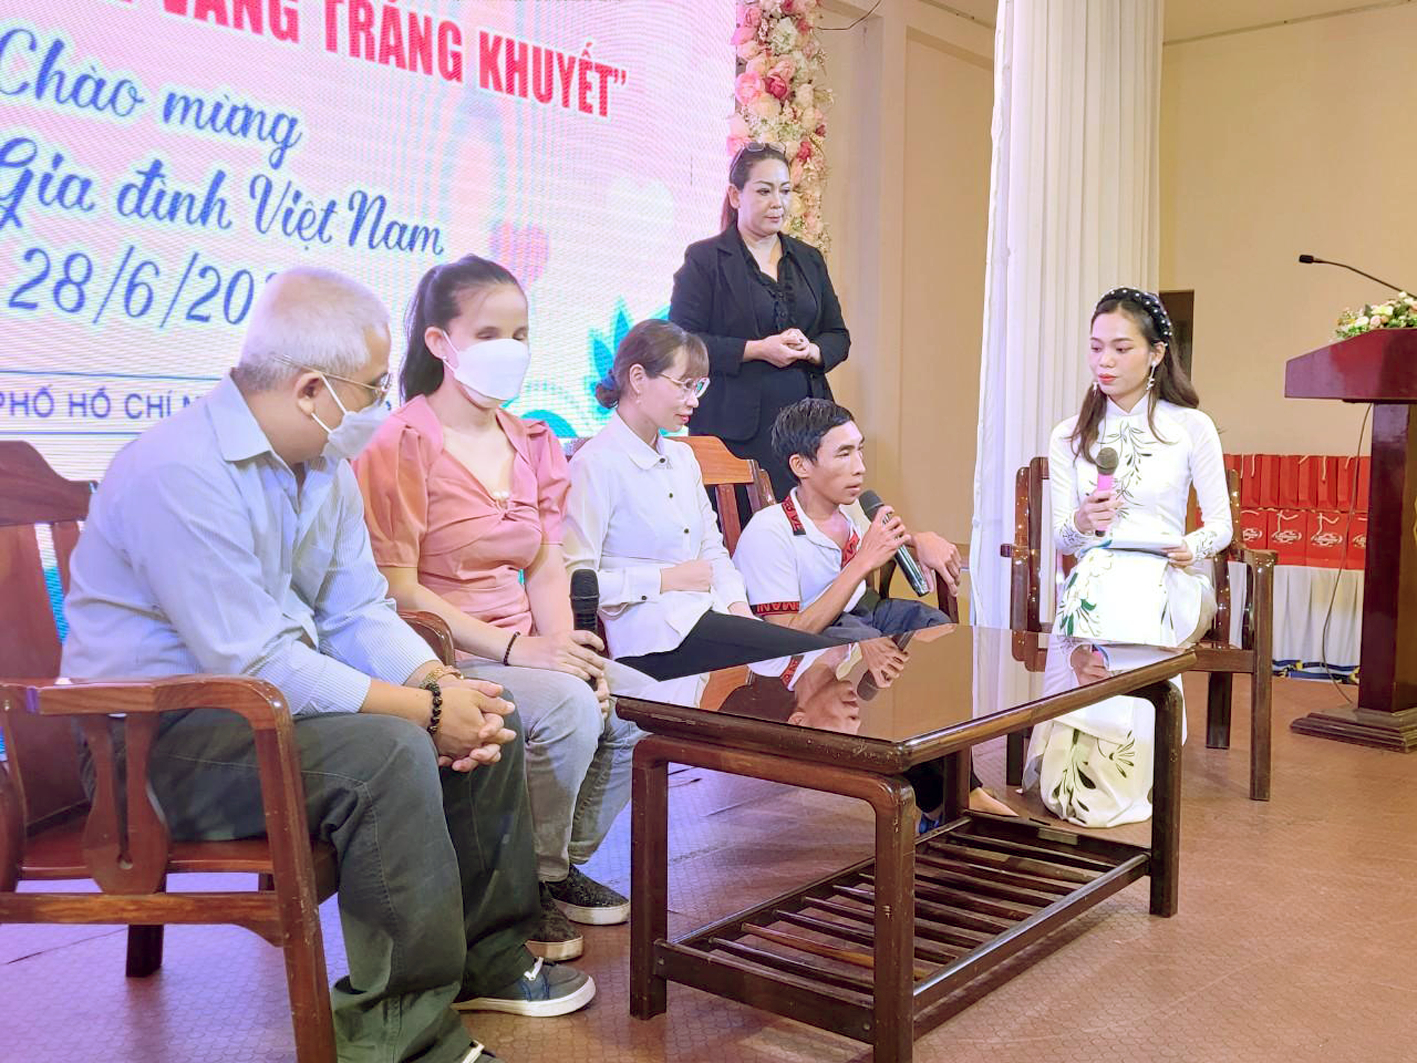 Anh Nguyễn Văn Út và chị Phạm Thị Thủy (thứ hai và thứ ba từ bên phải) giao lưu tại chương trình